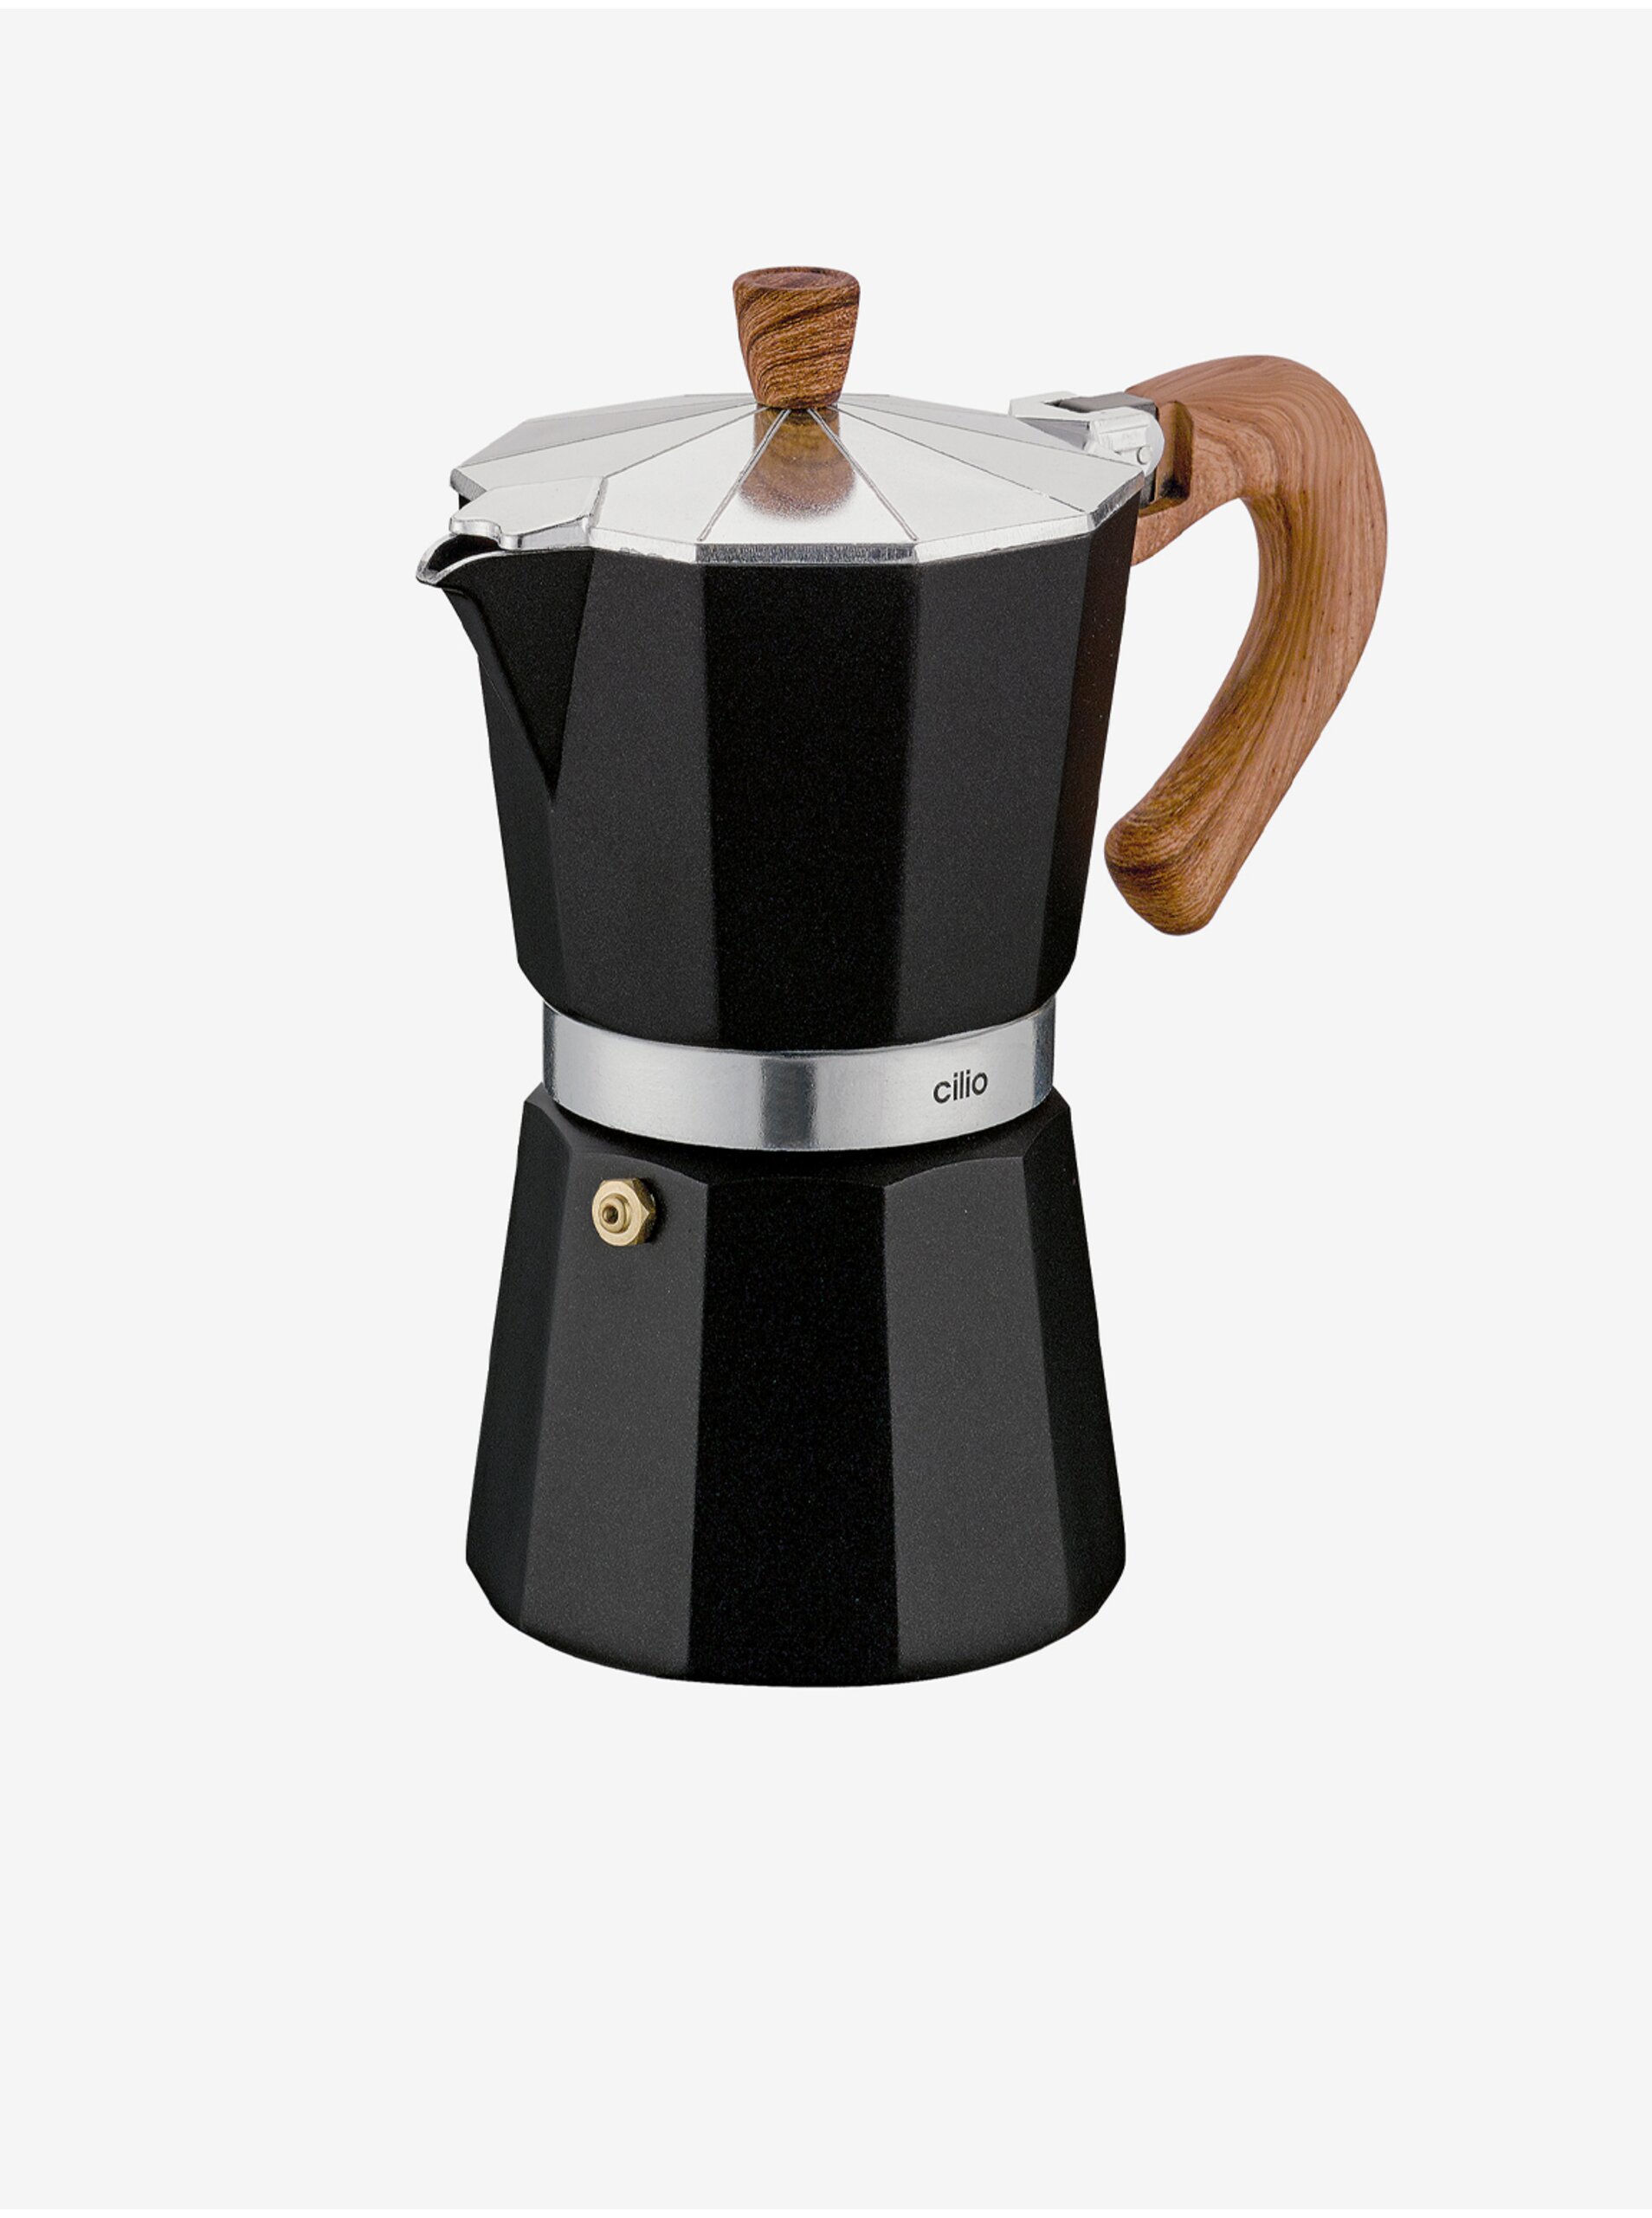 E-shop Černý moka kávovar/espressovač Classico Natura na 6 šálků Cilio